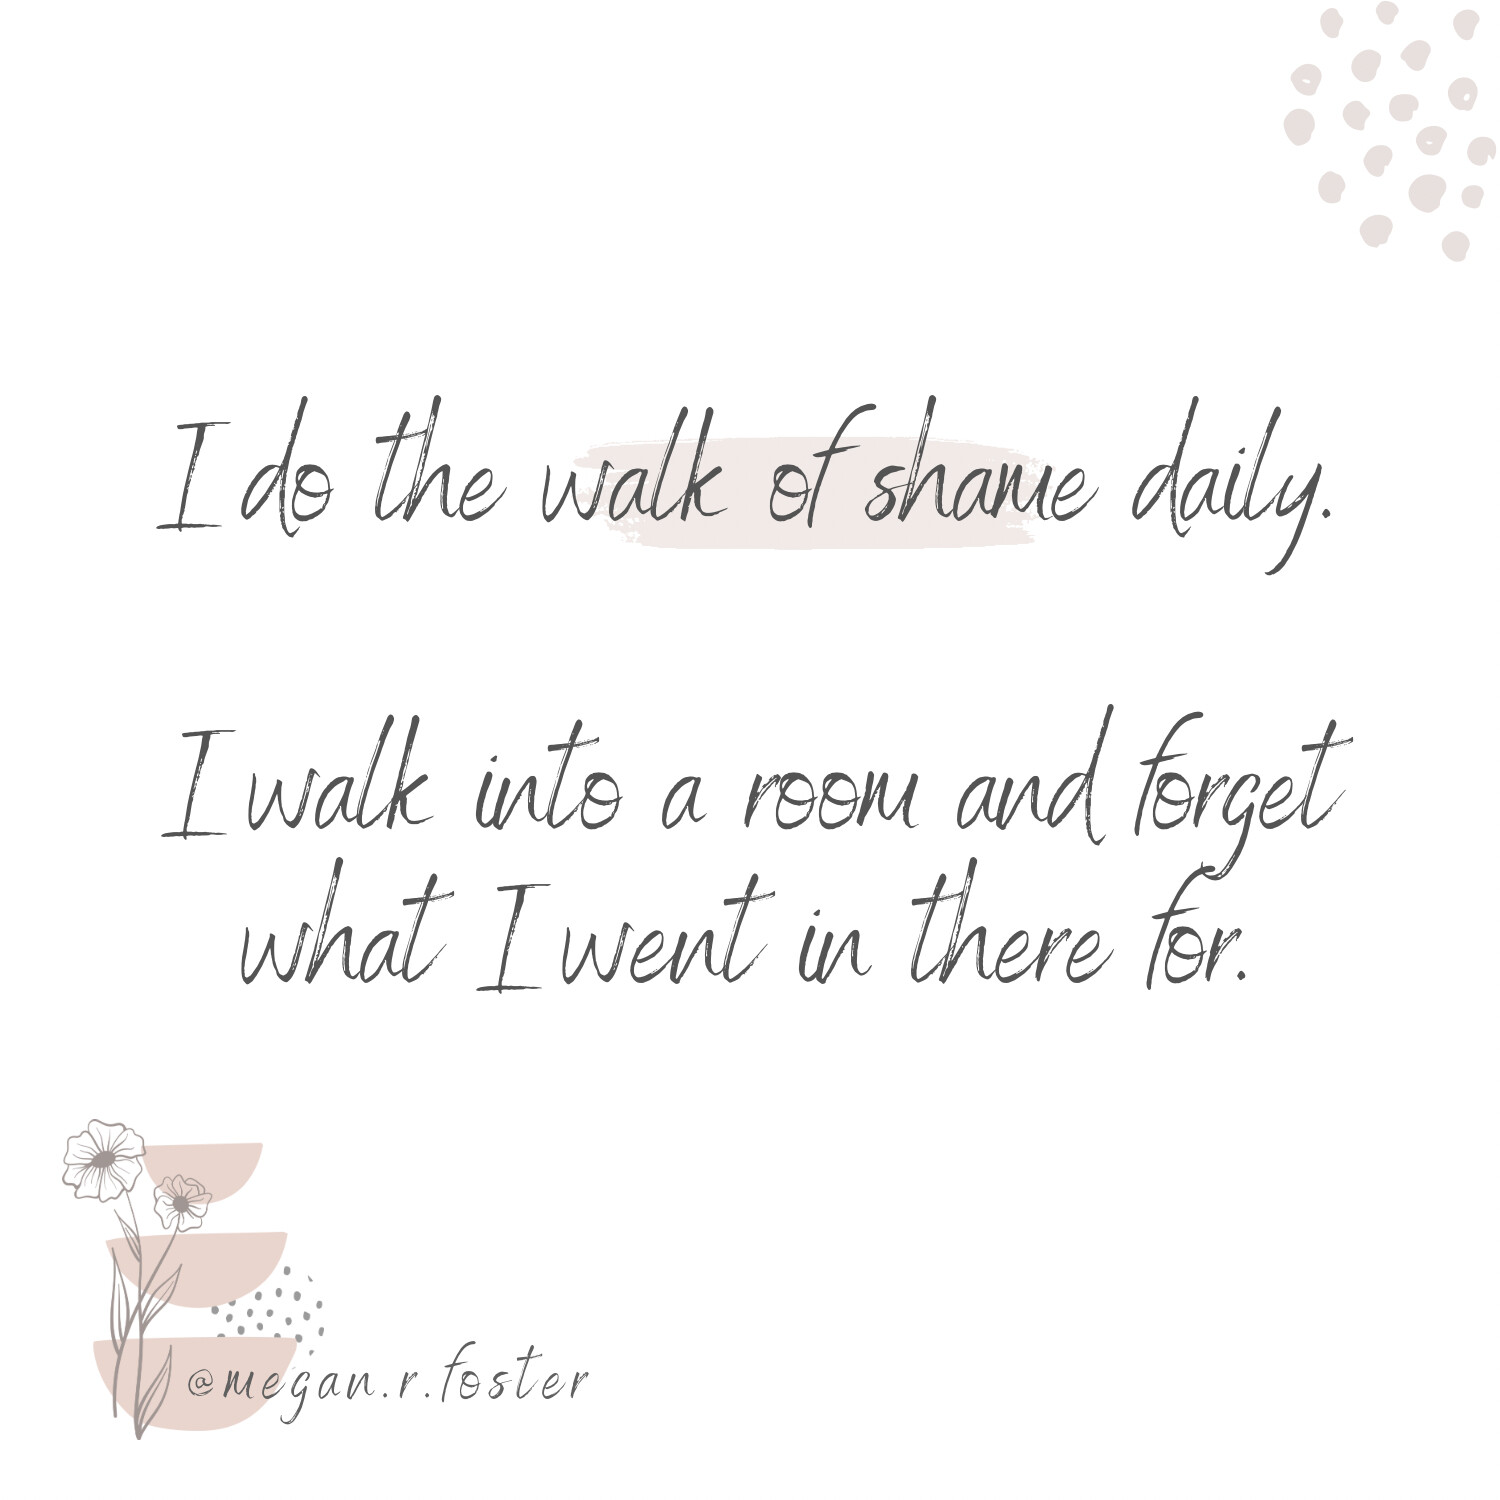 Do You Do the Walk of Shame?